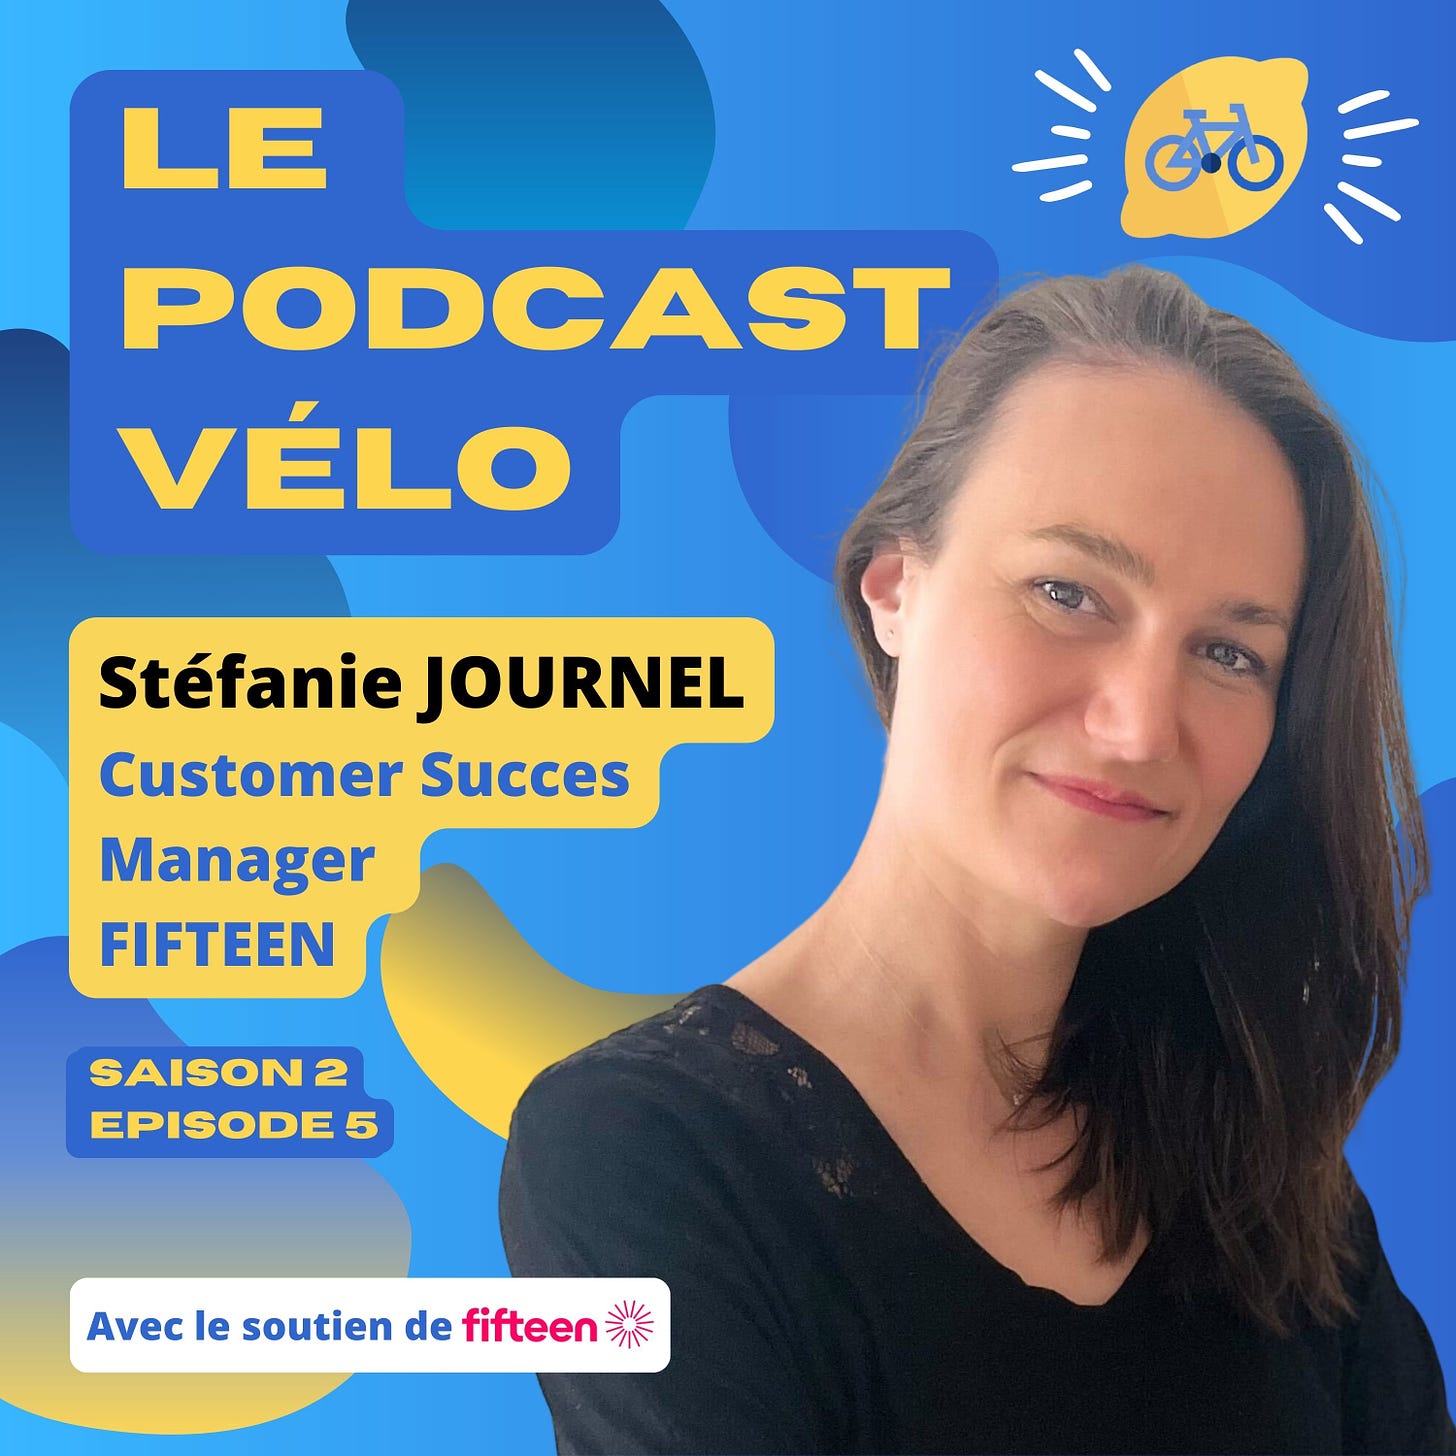 Vignette de l'épisode de podcast de Stéfanie Journel